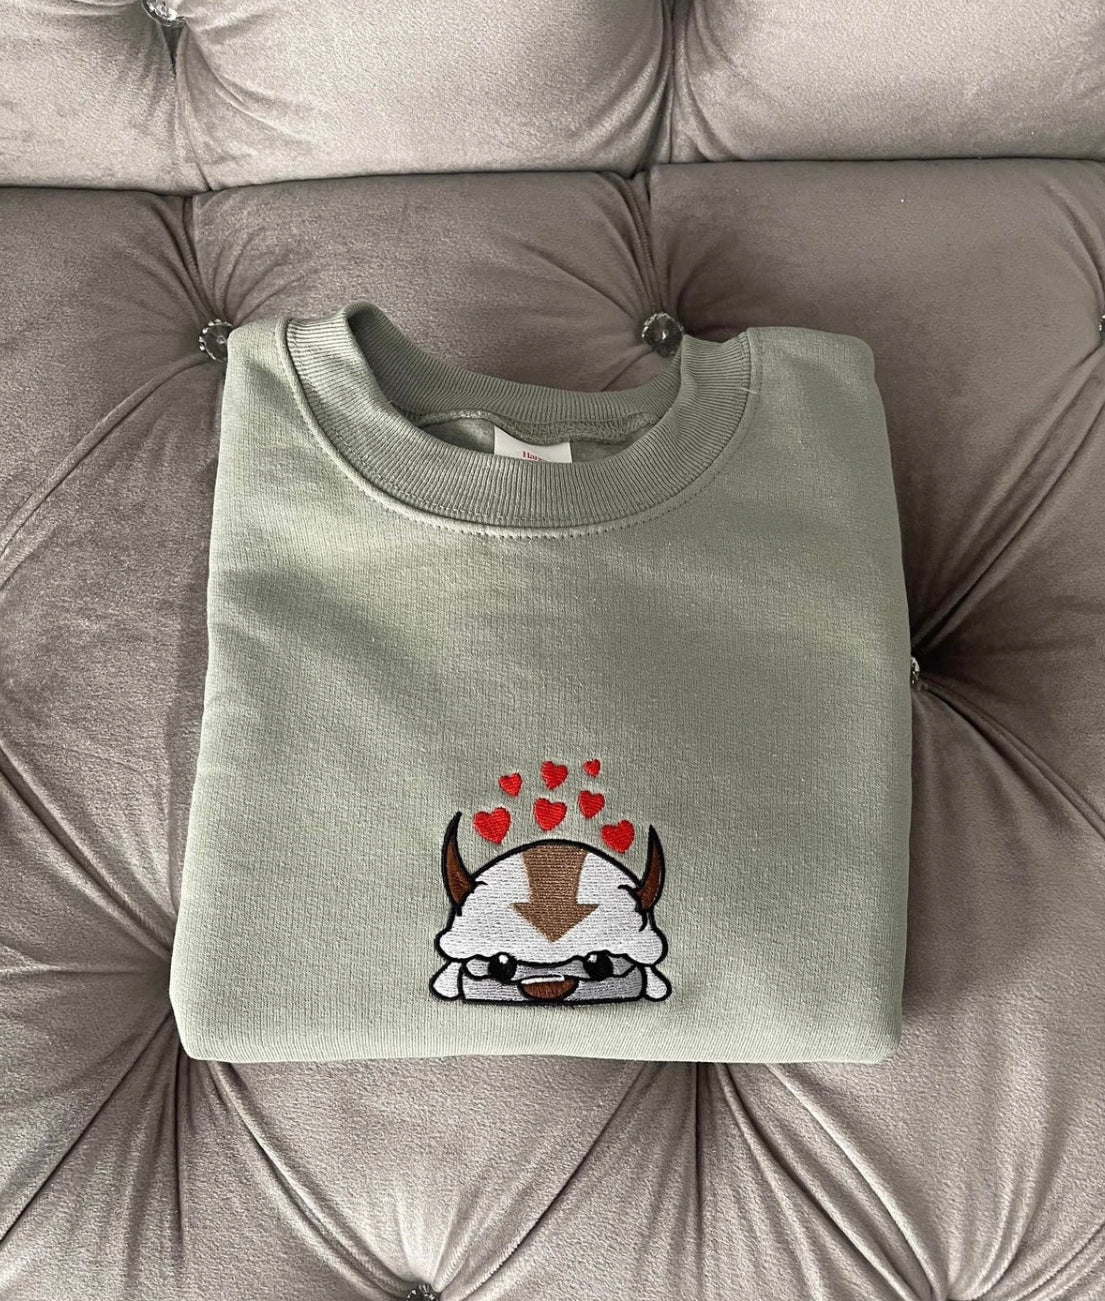 Appa x Valentine Day embroidered sweatshirt